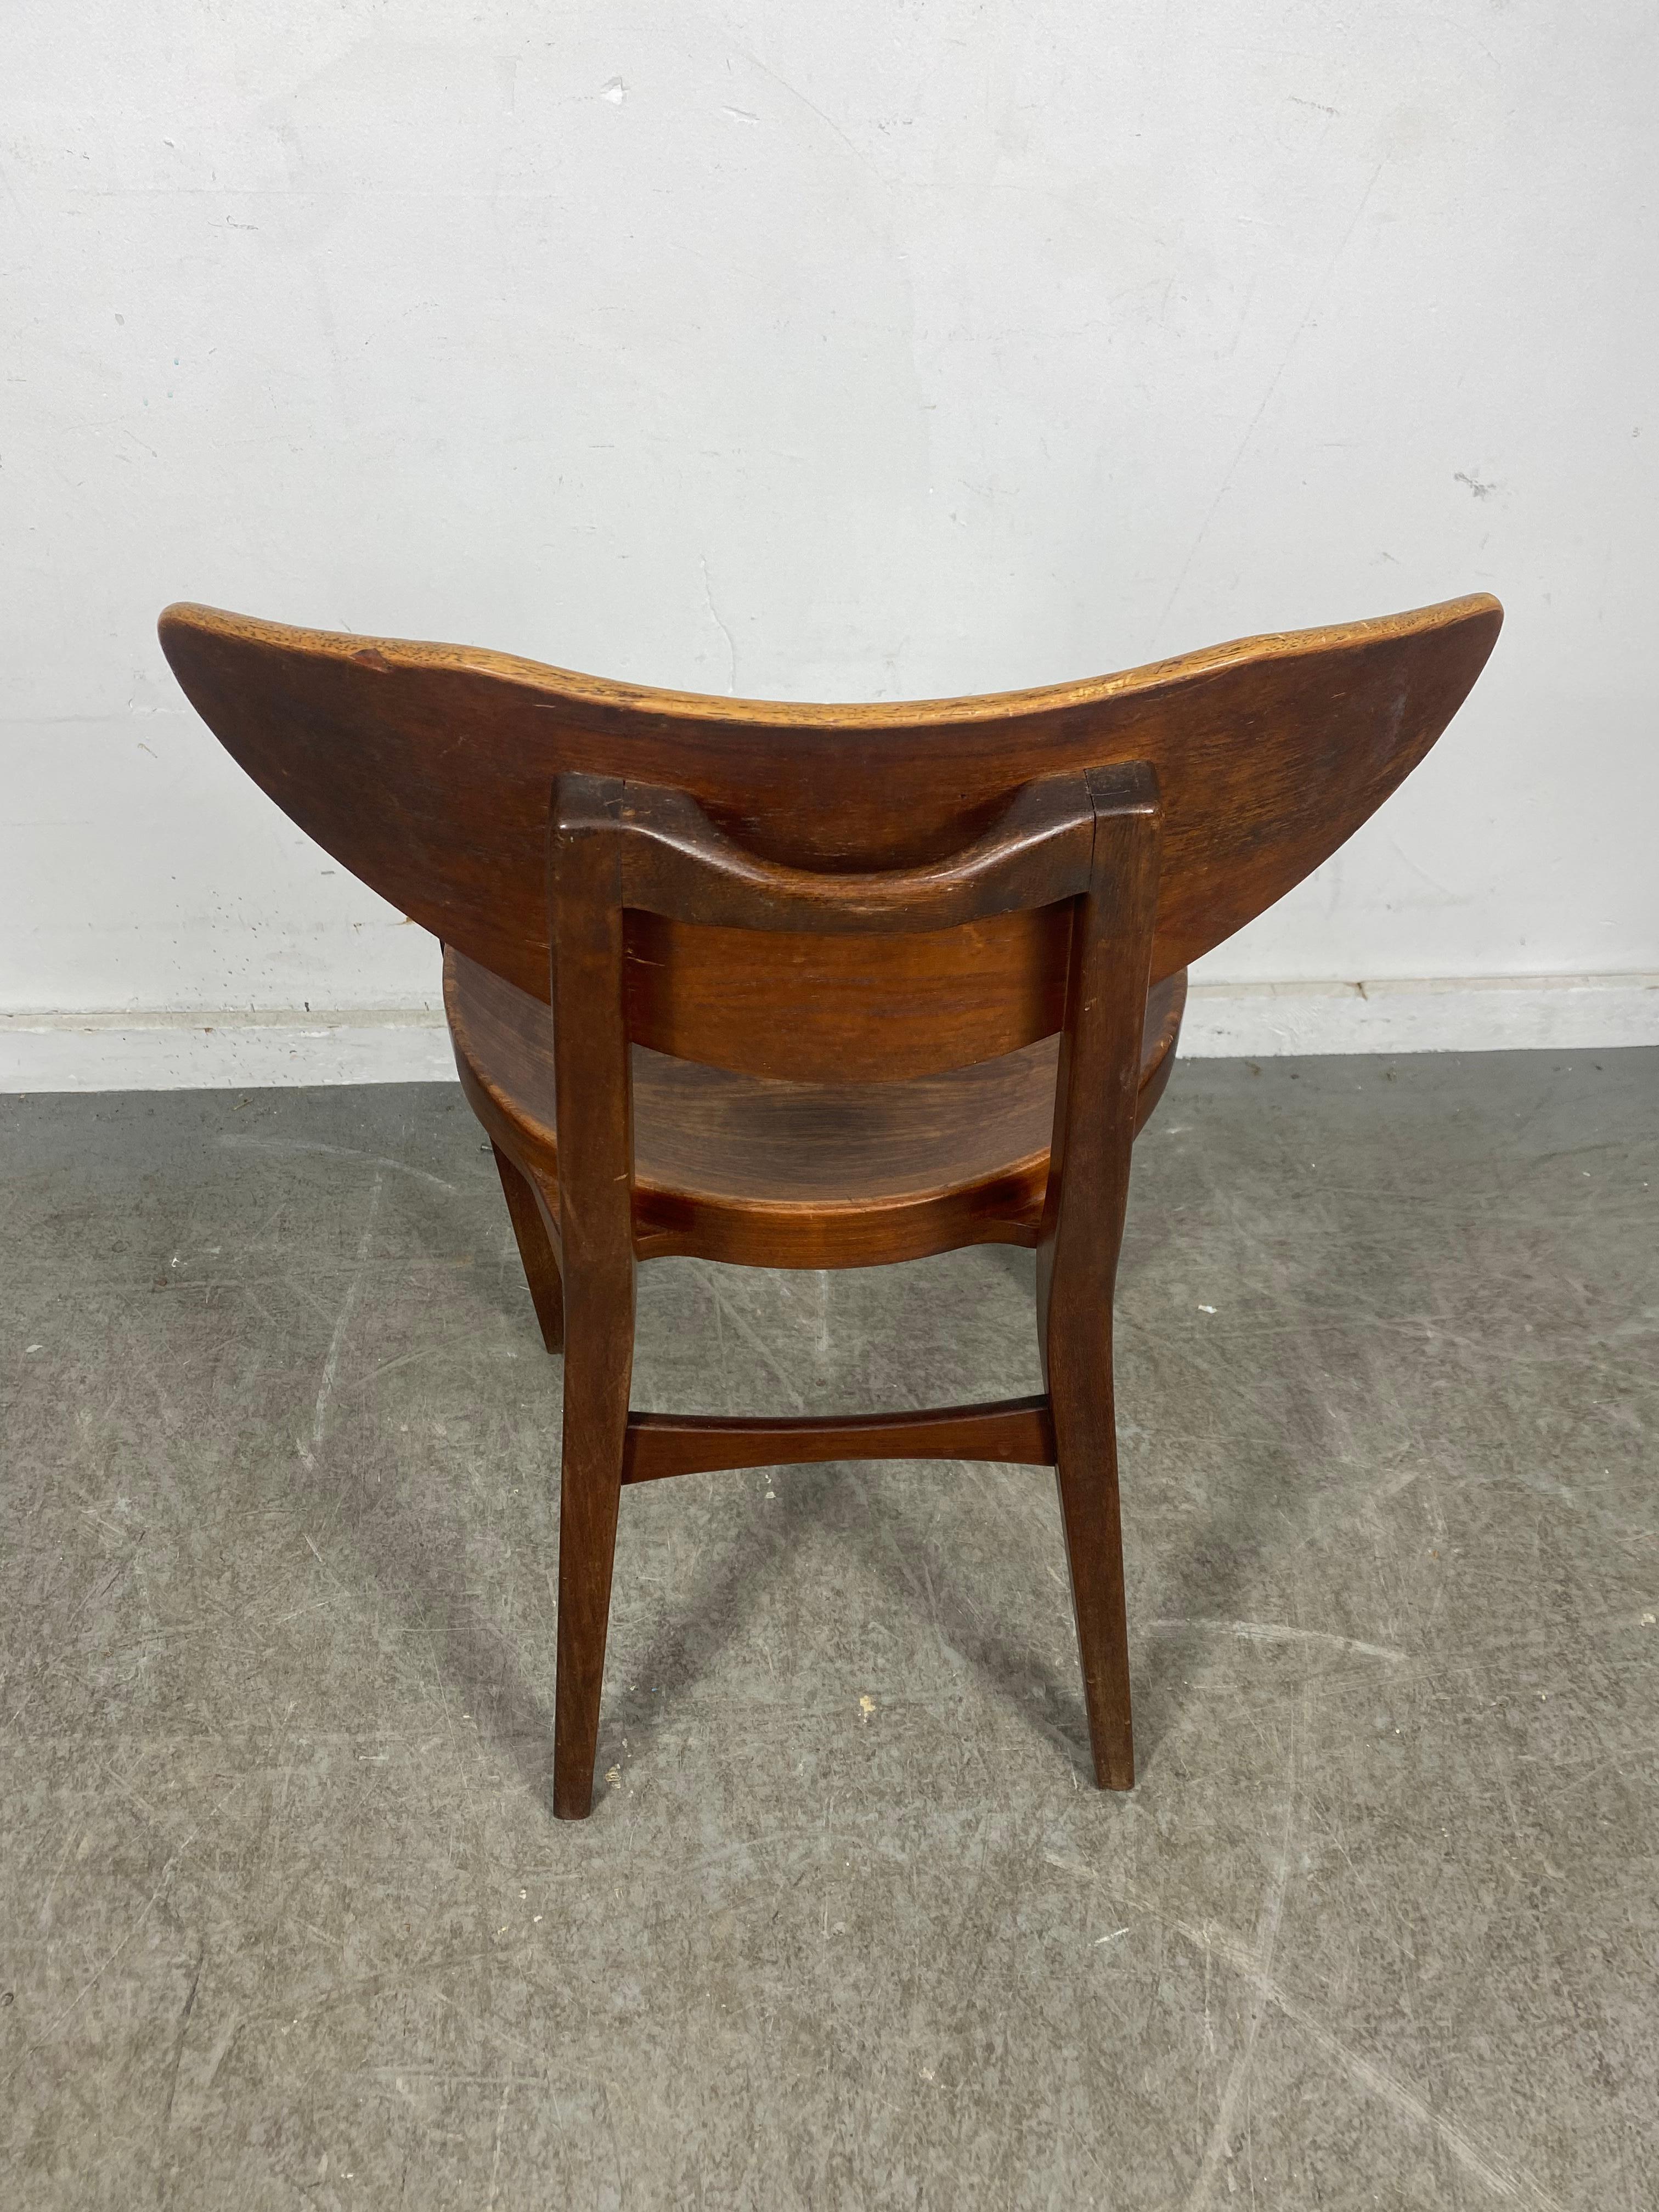 Danish Modernist Sculptural Chair Designed by Richard Jensen and Kjaerulff Rasmusse